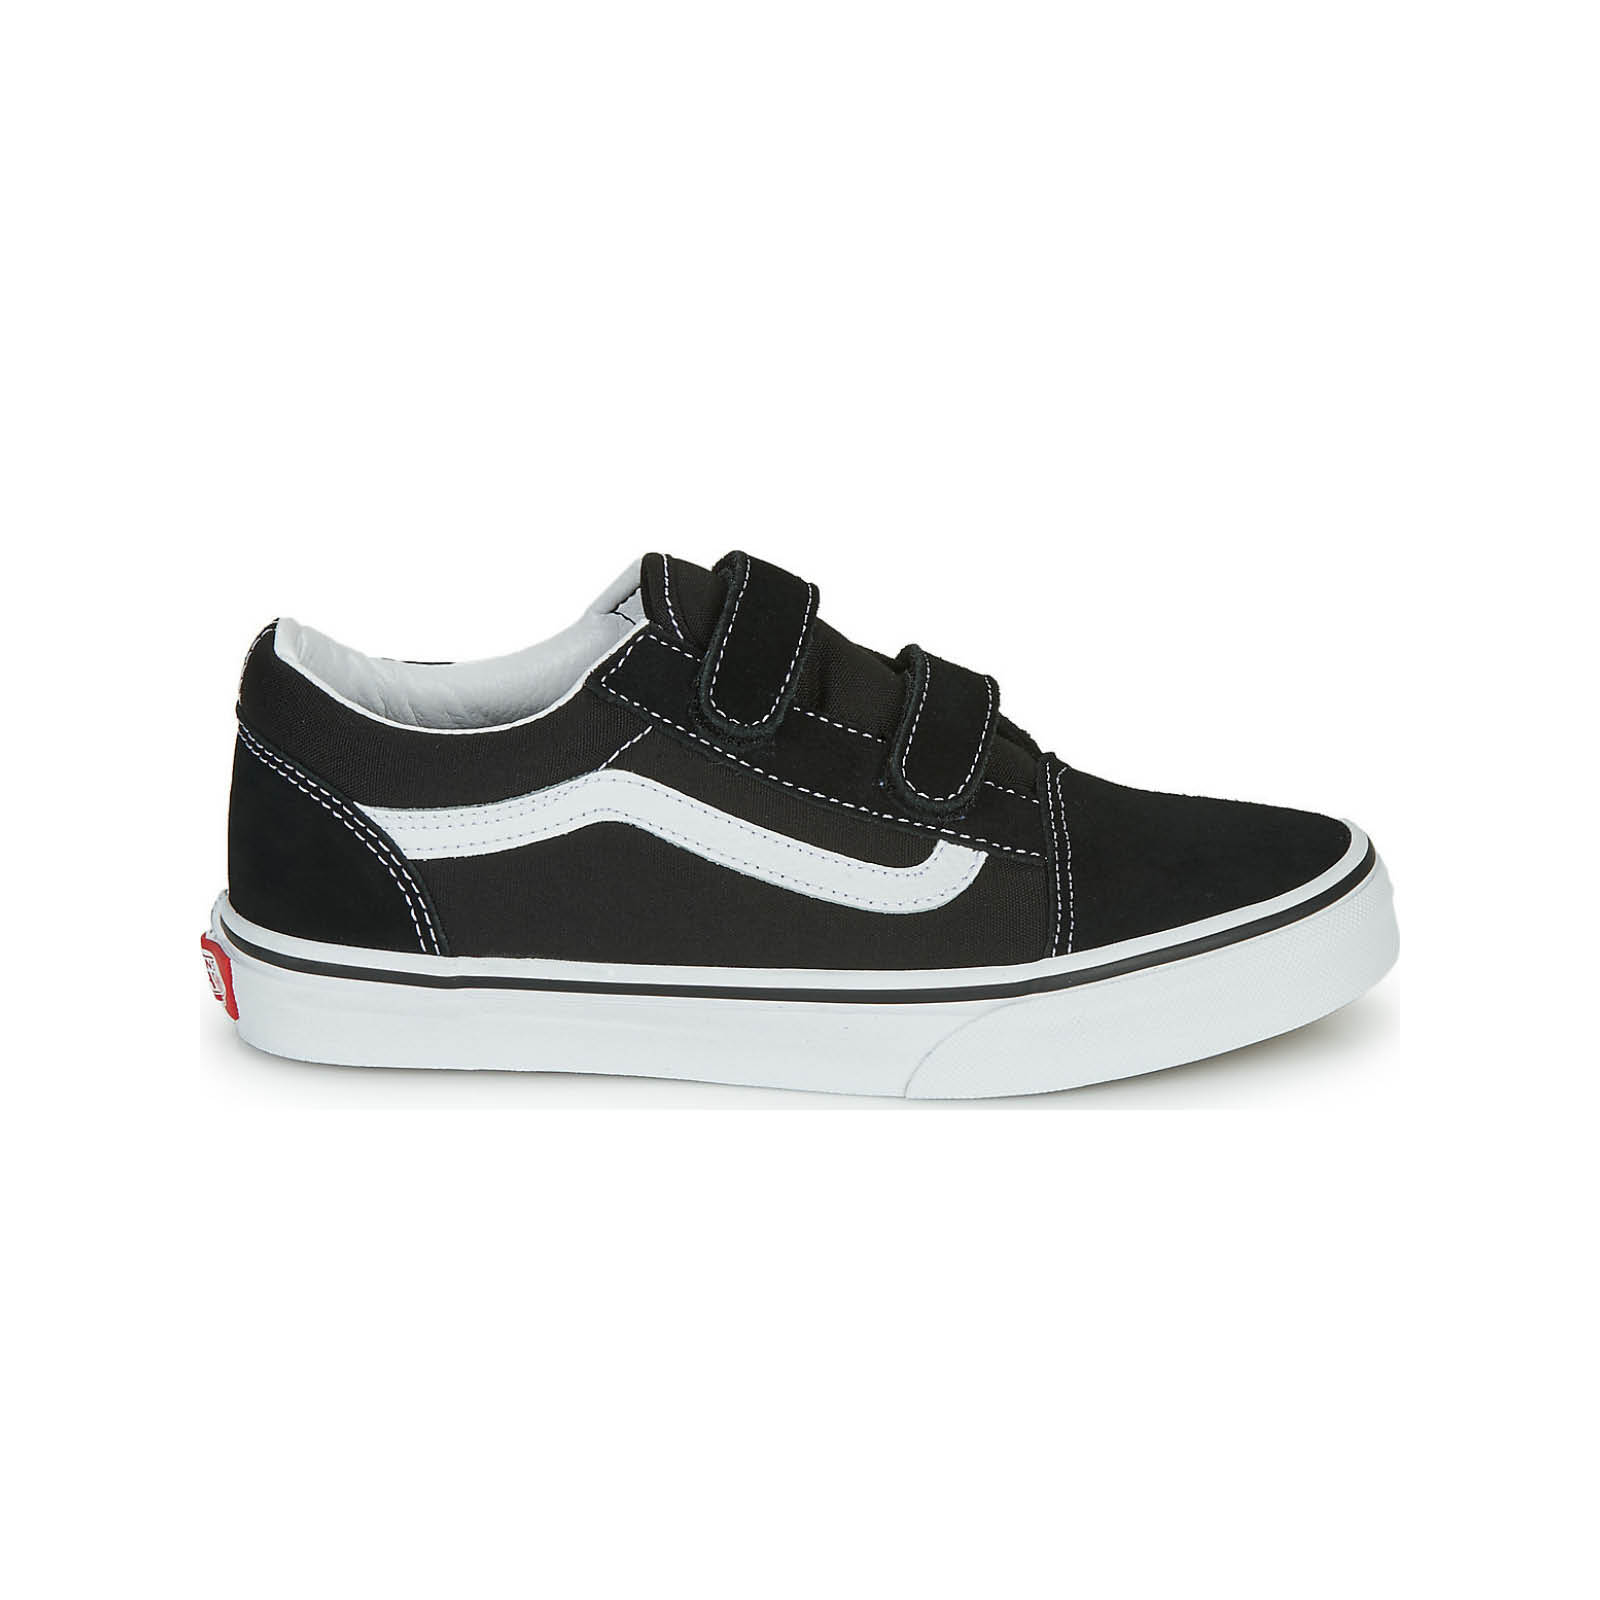 Vans - JN OLD SKOOL V - BLACK/TRUE WHIT Παιδικά > Παπούτσια > Sneaker > Παπούτσι Low Cut